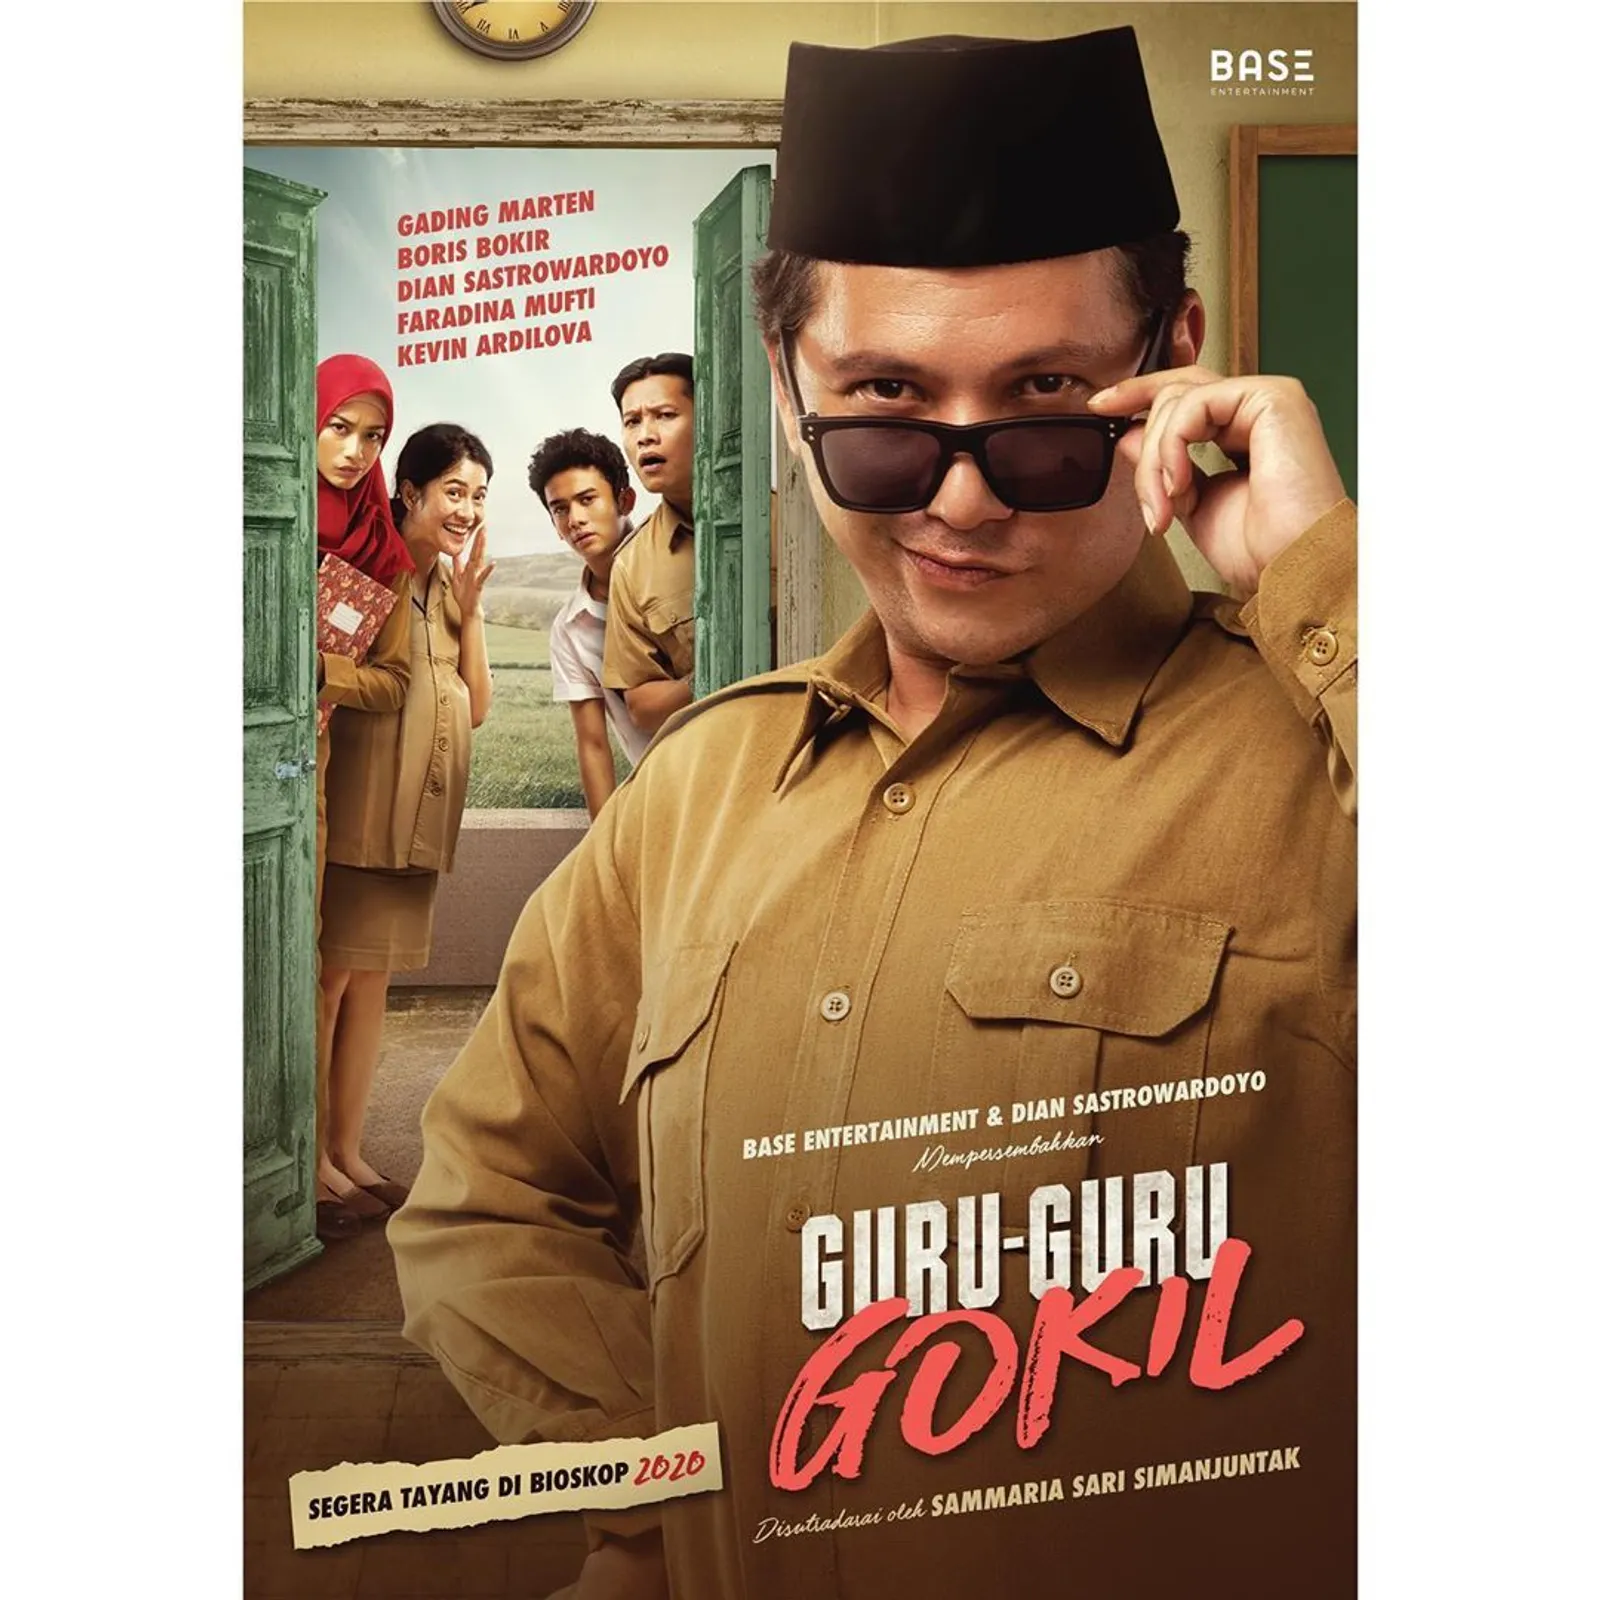 Rilis Teaser Trailer & Poster, Inilah Gambaran Film 'Guru-Guru Gokil'